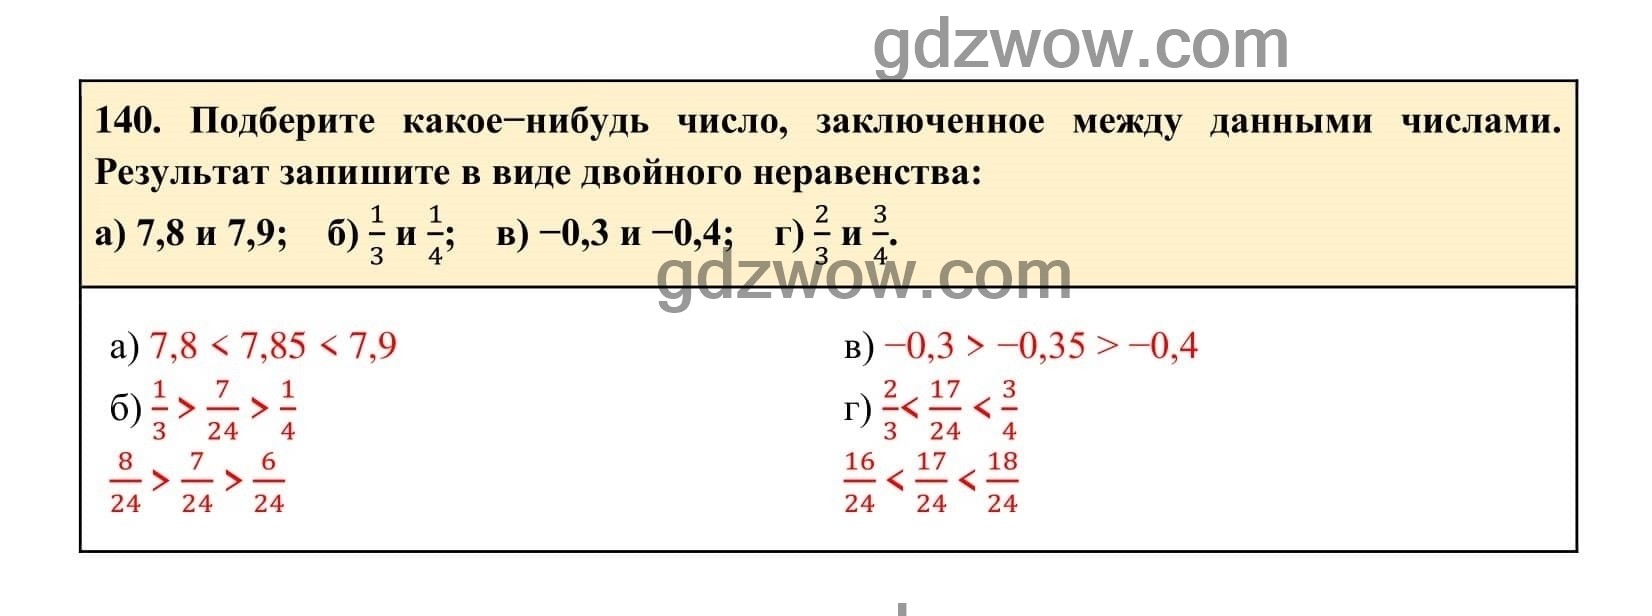 Упражнение 140 - ГДЗ по Алгебре 7 класс Учебник Макарычев (решебник) - GDZwow